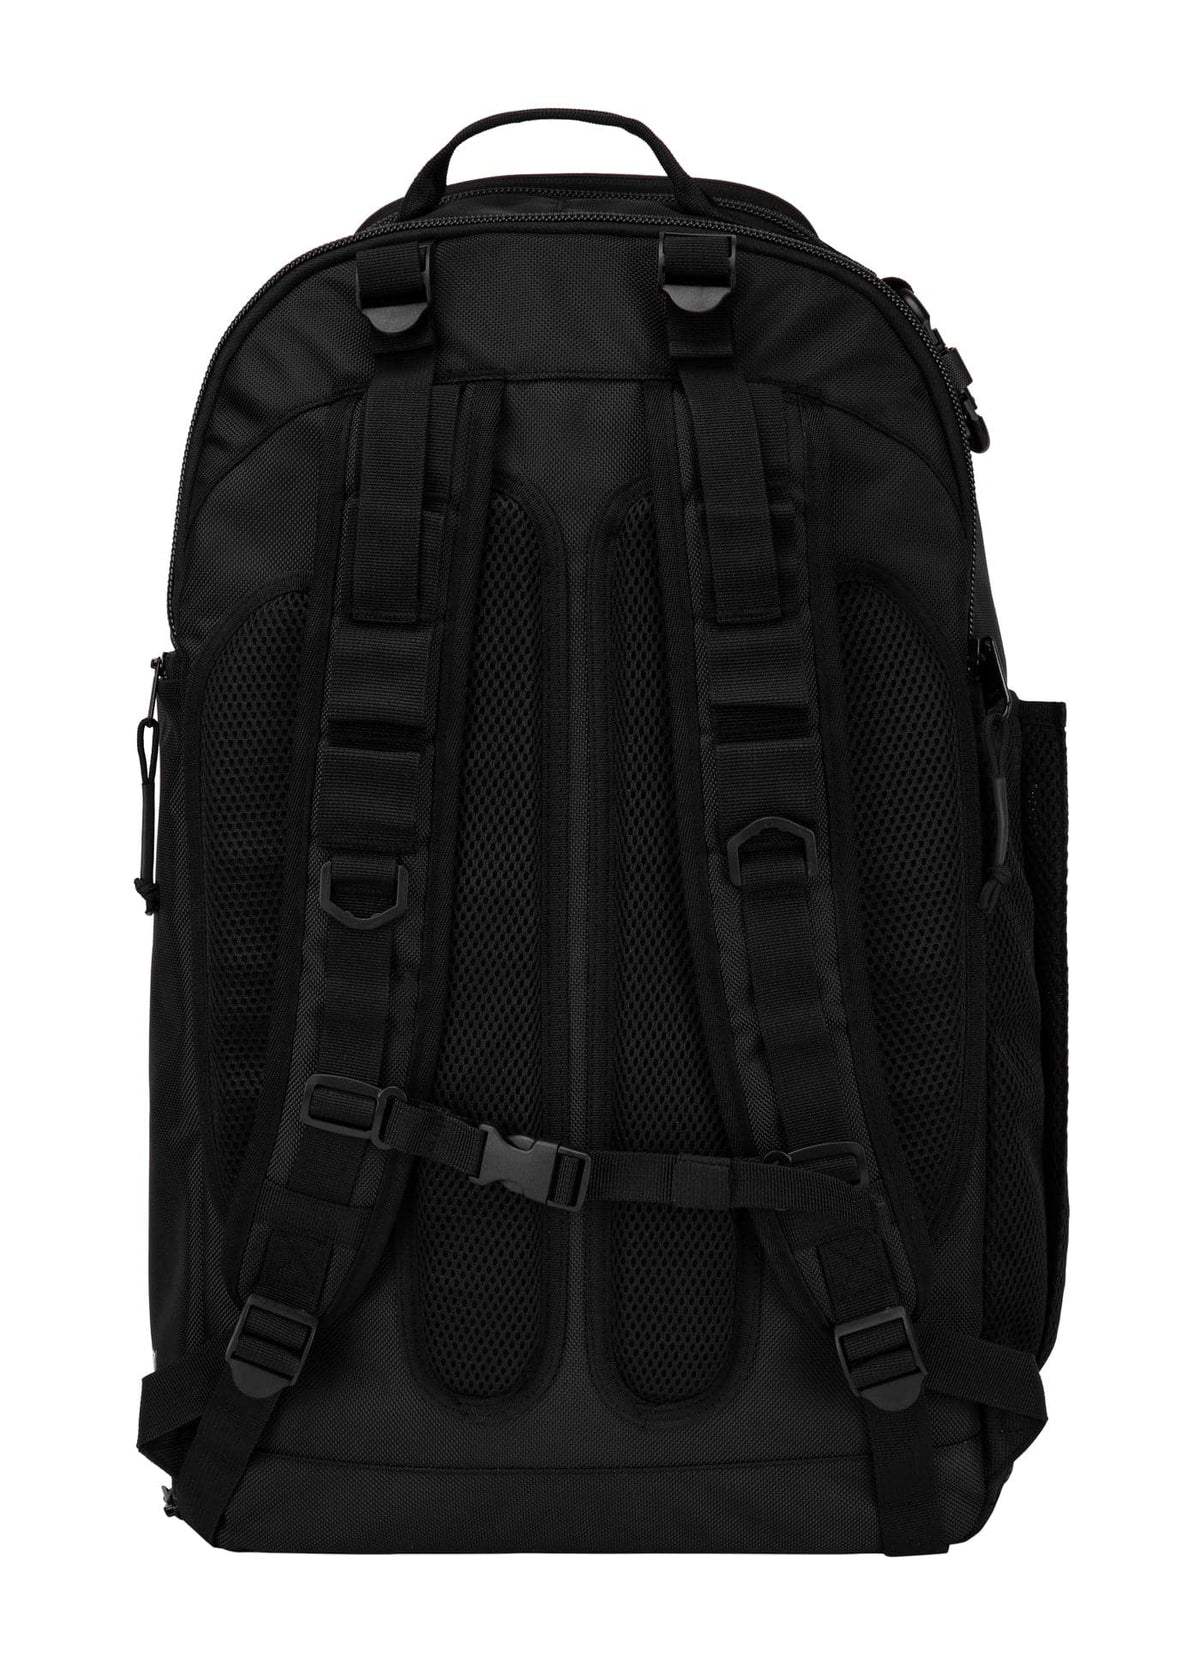 AIRWAY HILLTOP 2 Black Backpack